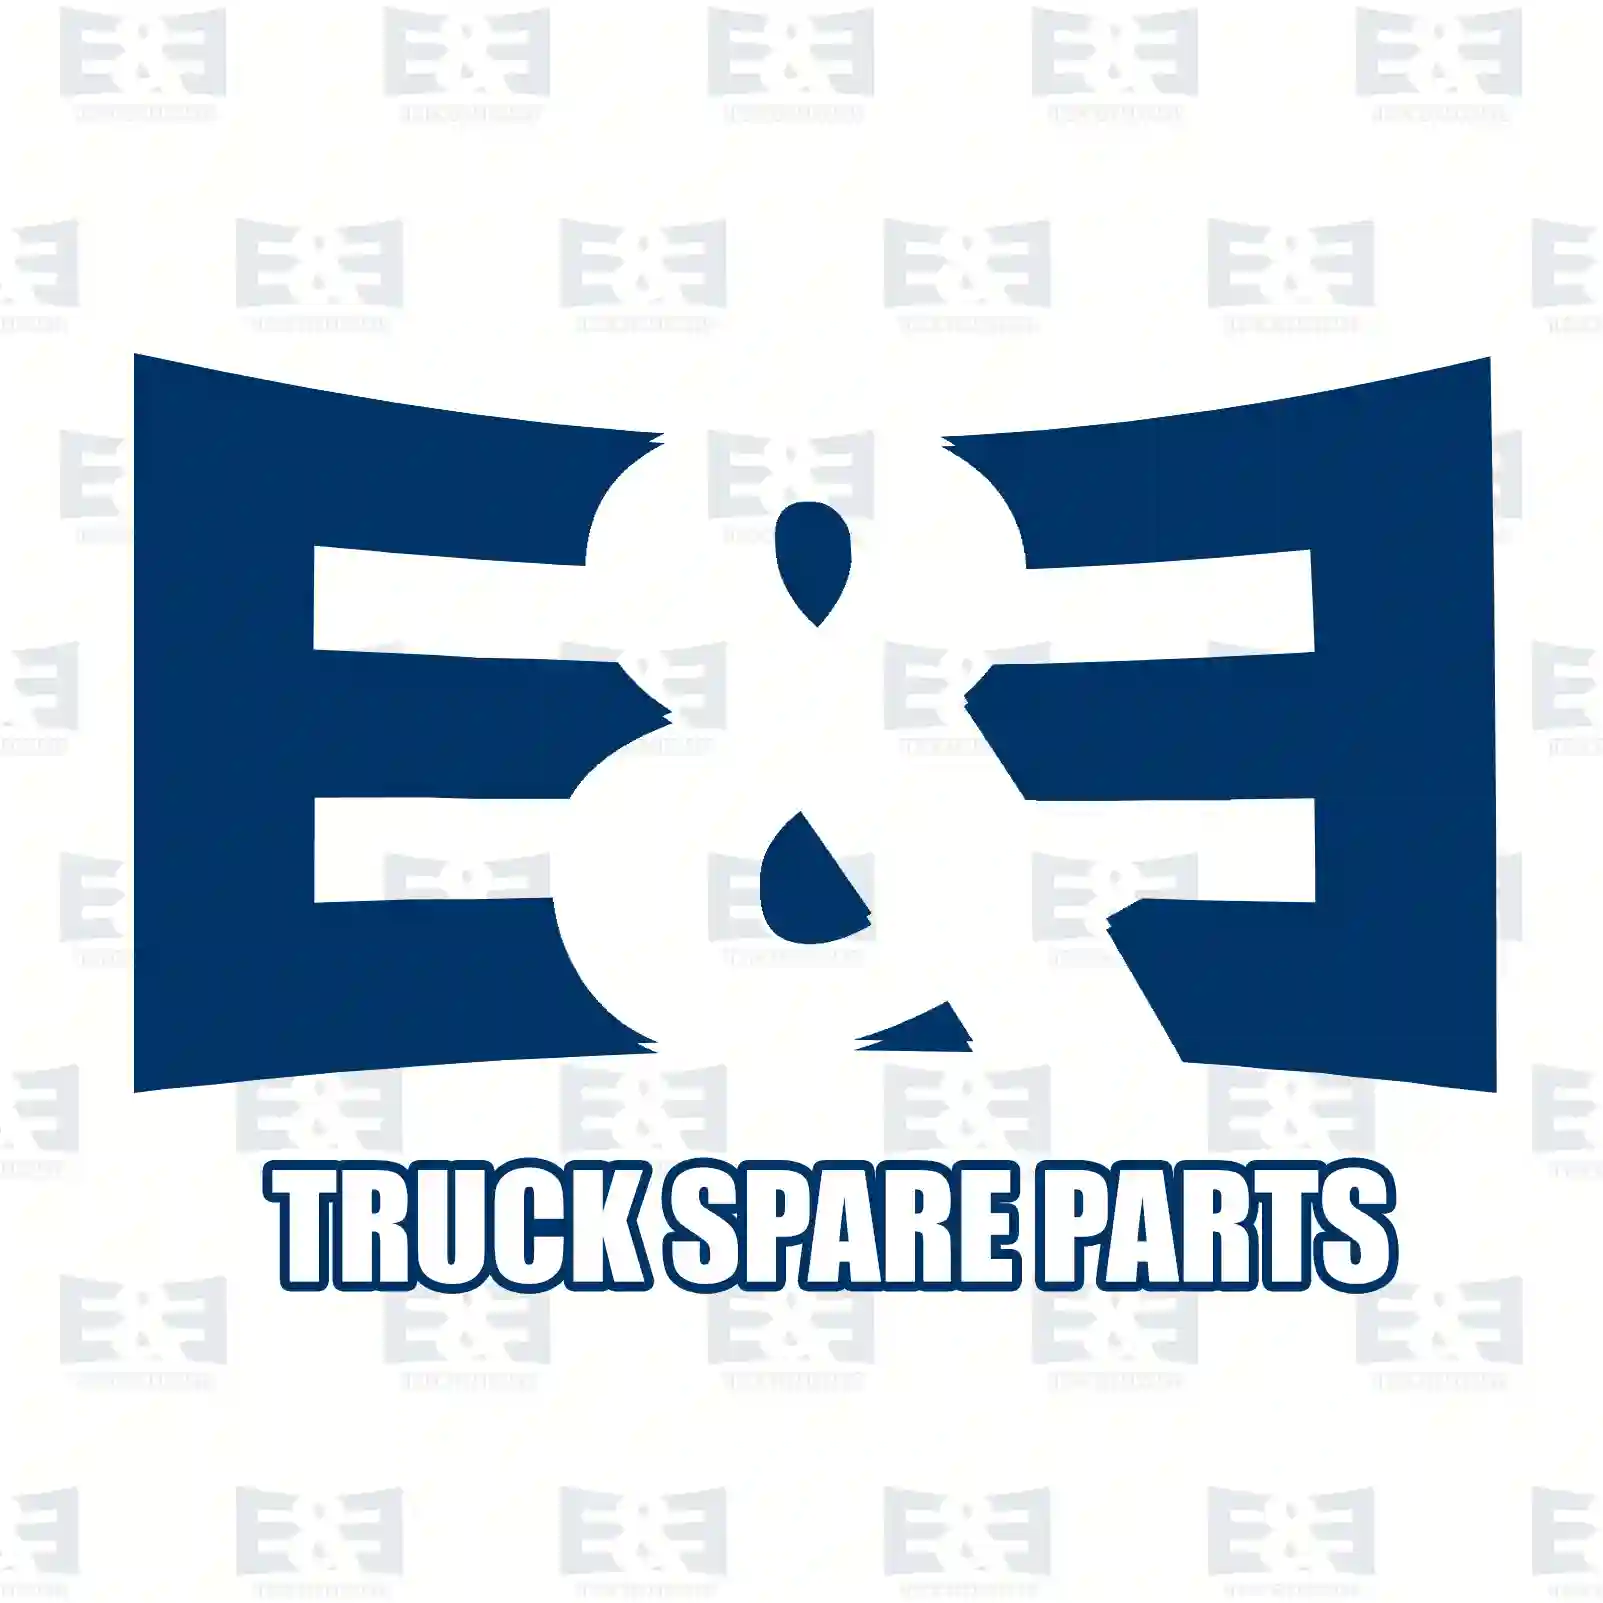 Propeller shaft, 2E2276736, 504003441, 504003 ||  2E2276736 E&E Truck Spare Parts | Truck Spare Parts, Auotomotive Spare Parts Propeller shaft, 2E2276736, 504003441, 504003 ||  2E2276736 E&E Truck Spare Parts | Truck Spare Parts, Auotomotive Spare Parts